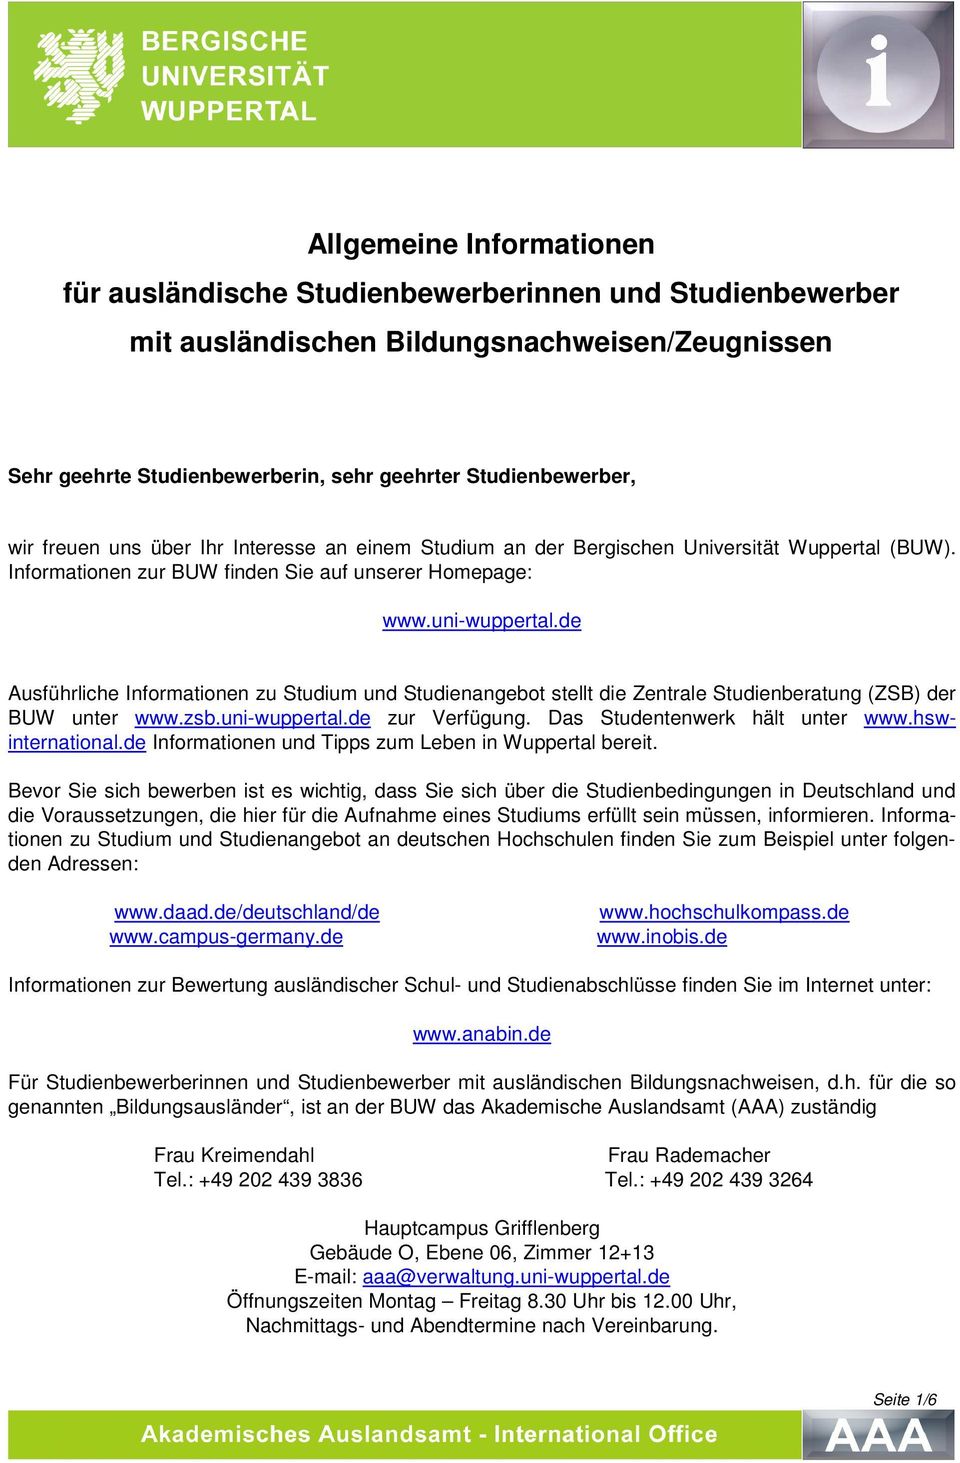 de Ausführliche Informationen zu Studium und Studienangebot stellt die Zentrale Studienberatung (ZSB) der BUW unter www.zsb.uni-wuppertal.de zur Verfügung. Das Studentenwerk hält unter www.